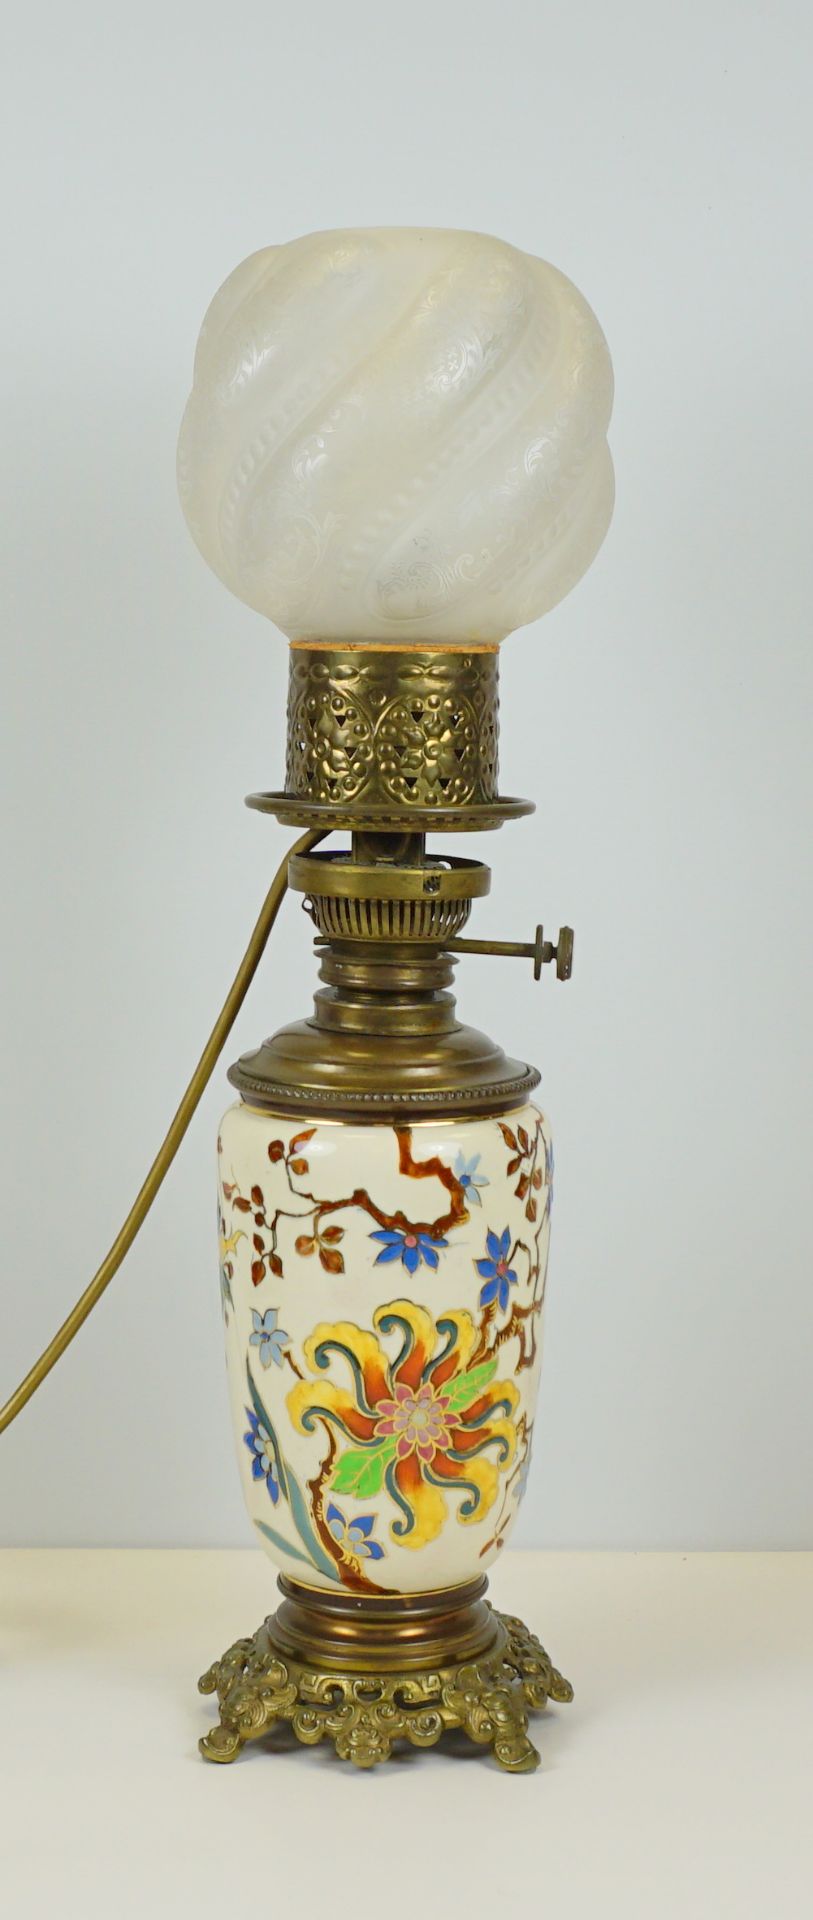 Lampe mit Keramikkorpus und floraler Emaillemalerei, ehemals Petroleumlampe, um 1900